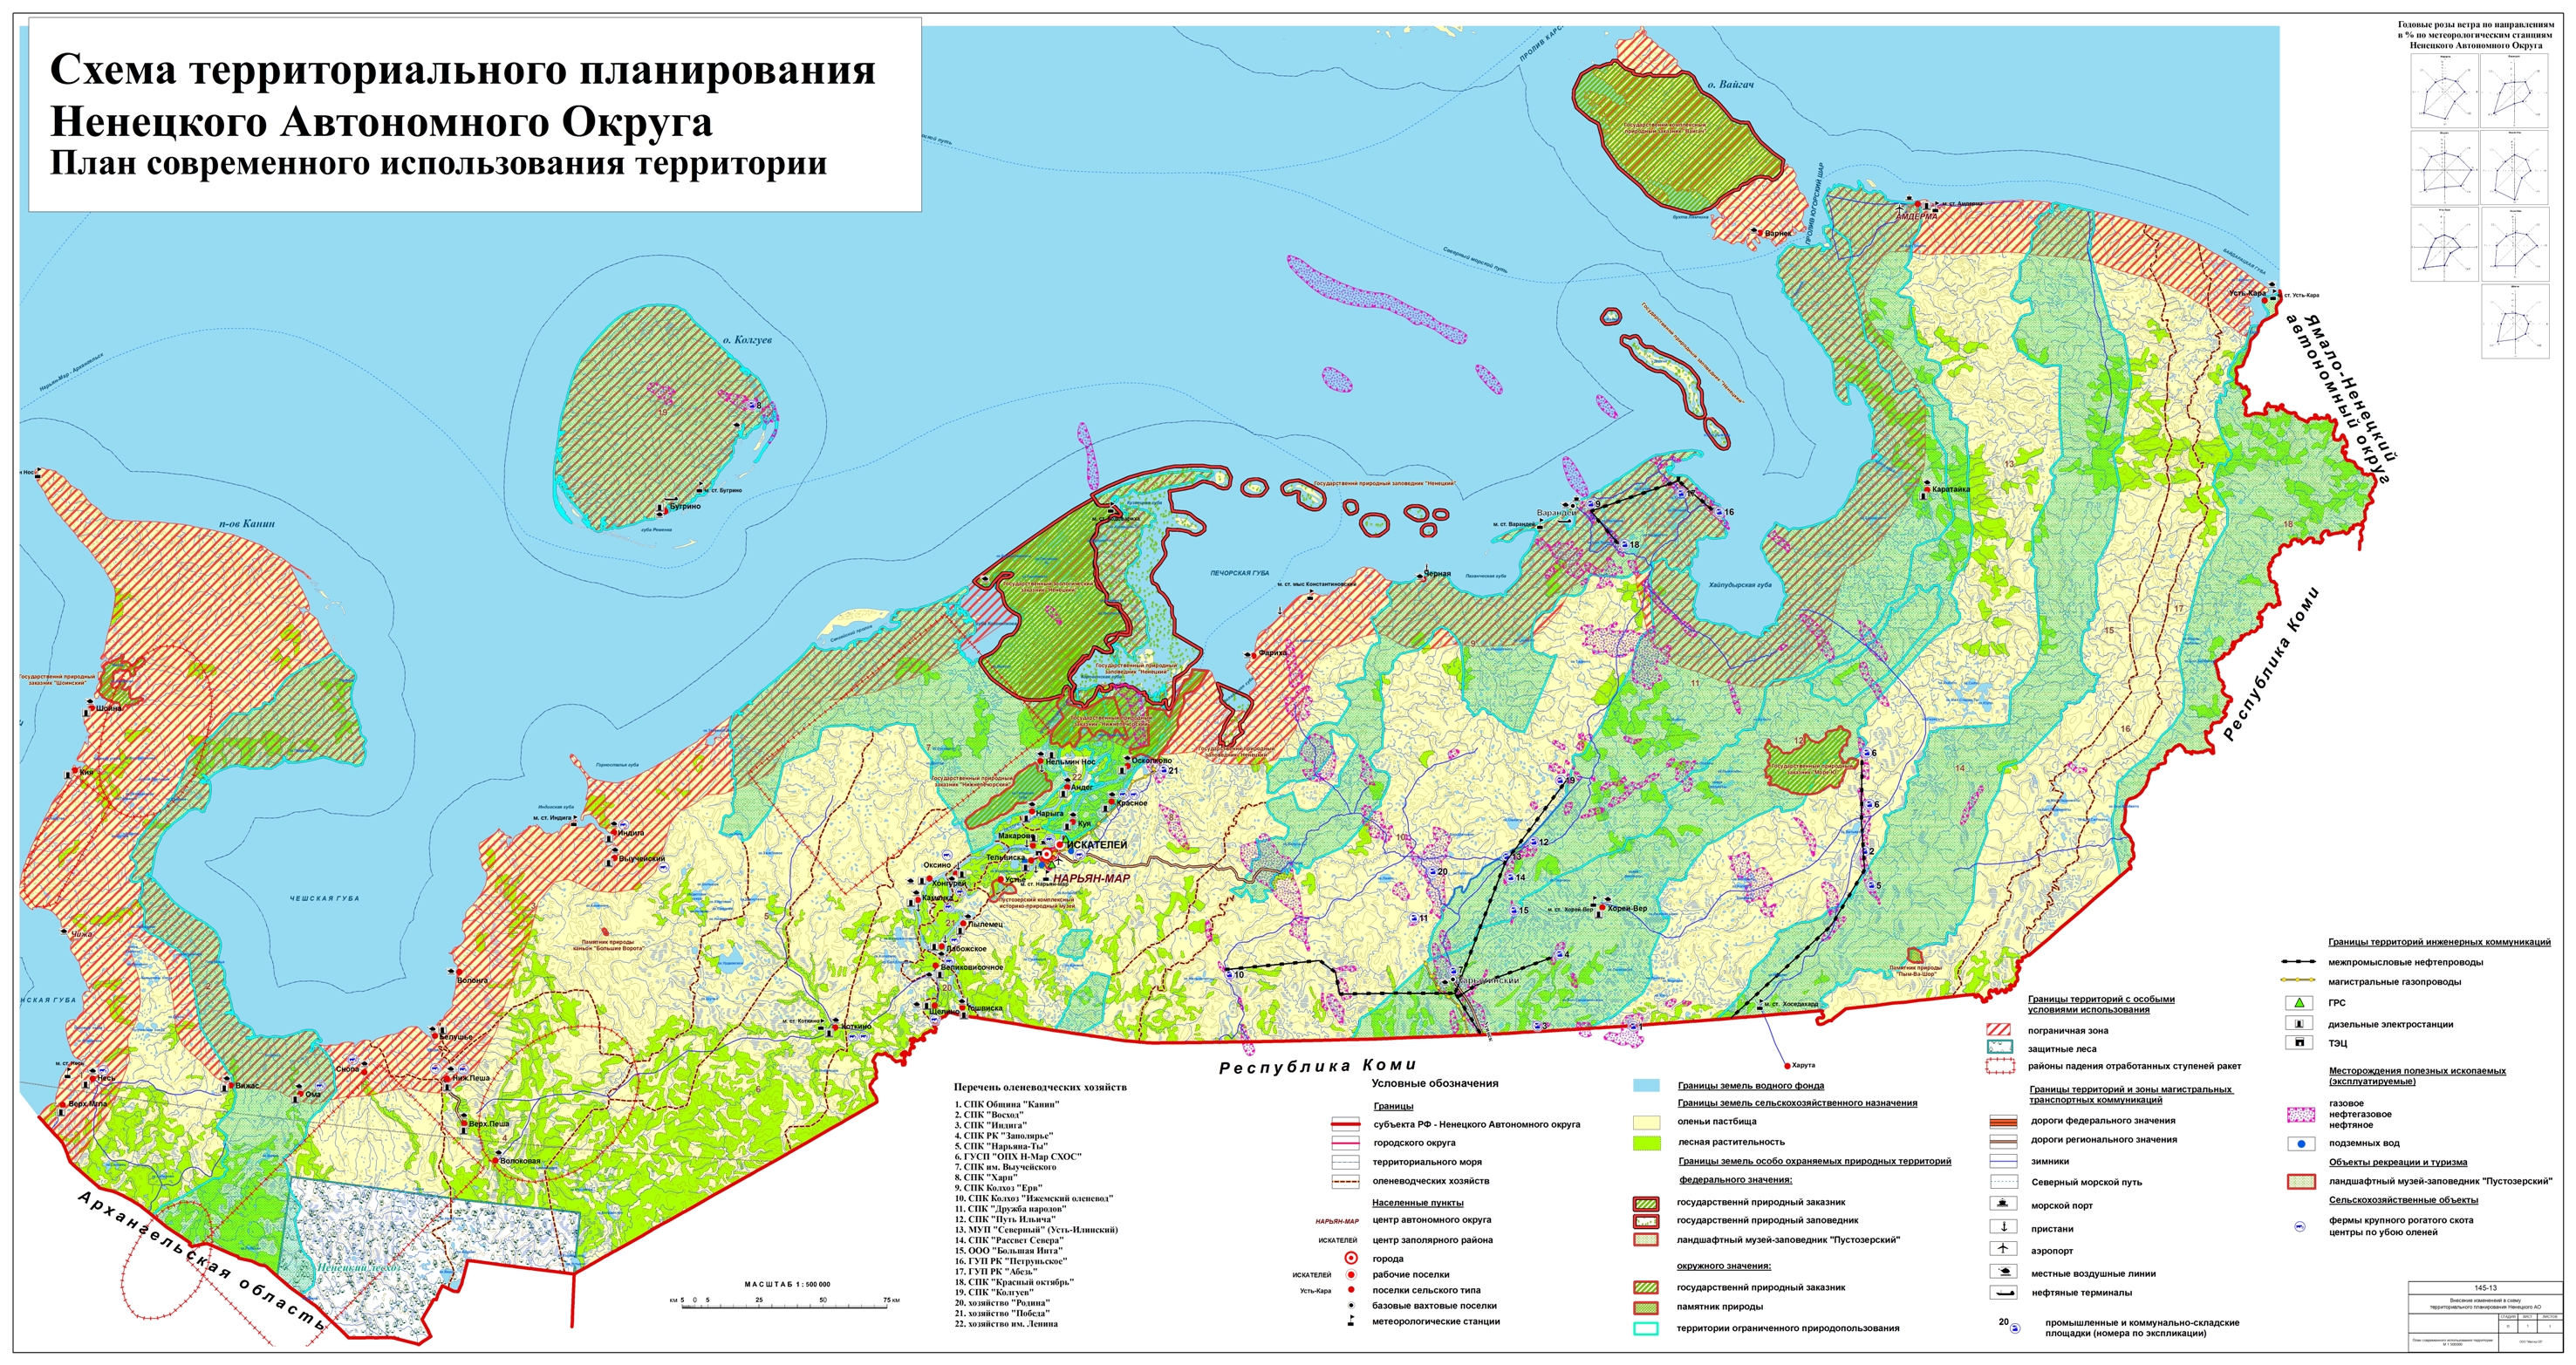 Развитие ненецкого автономного округа